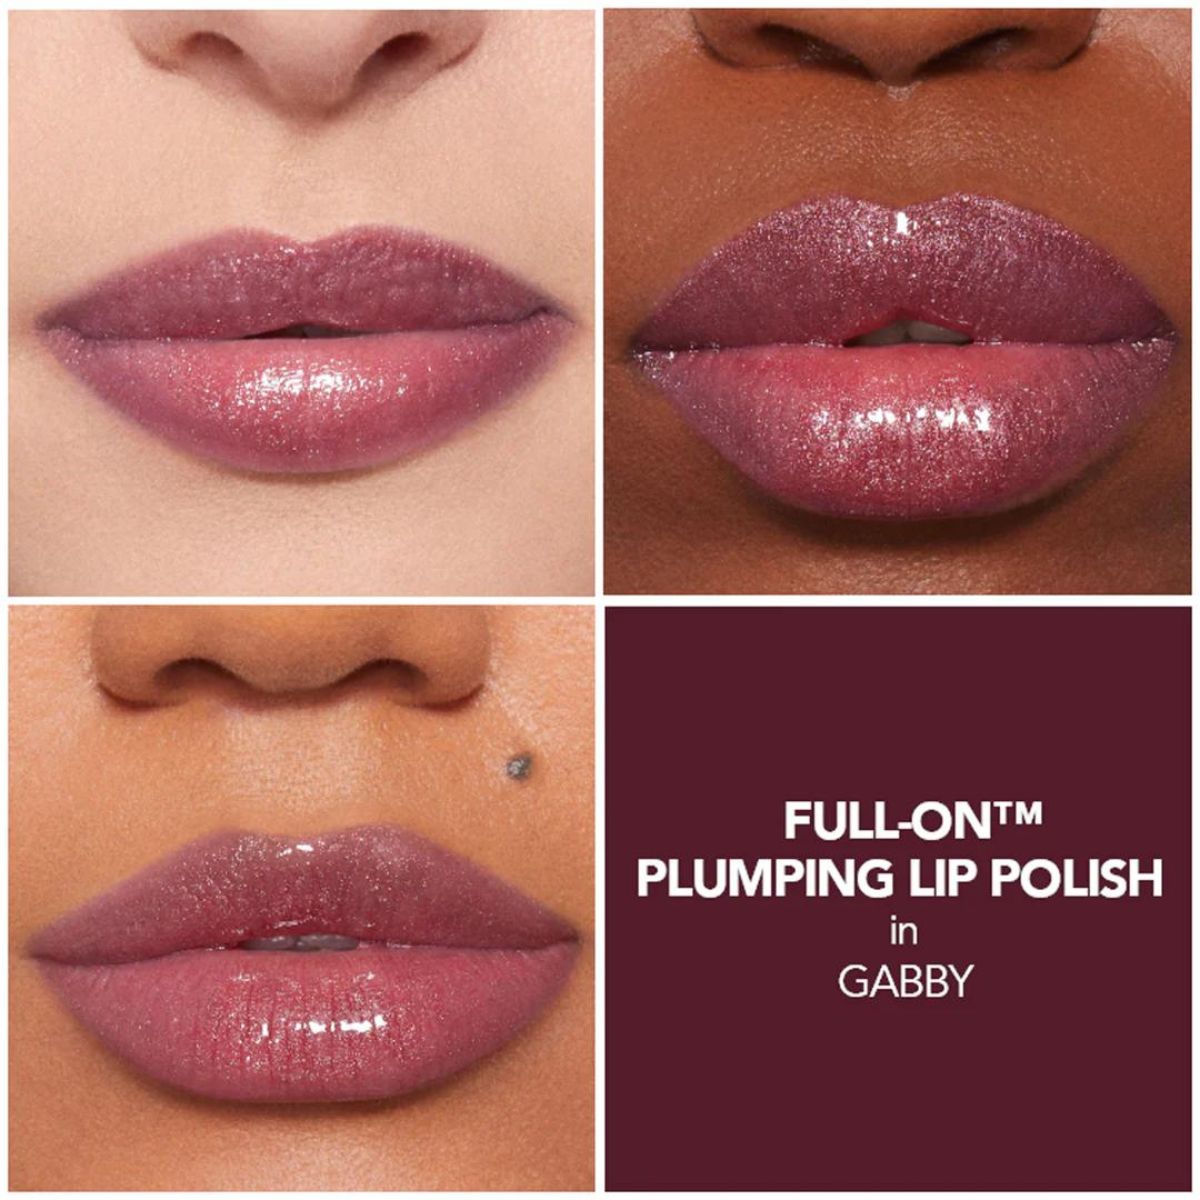 Buxom Full-On Plumping Lip Polish in Gabby